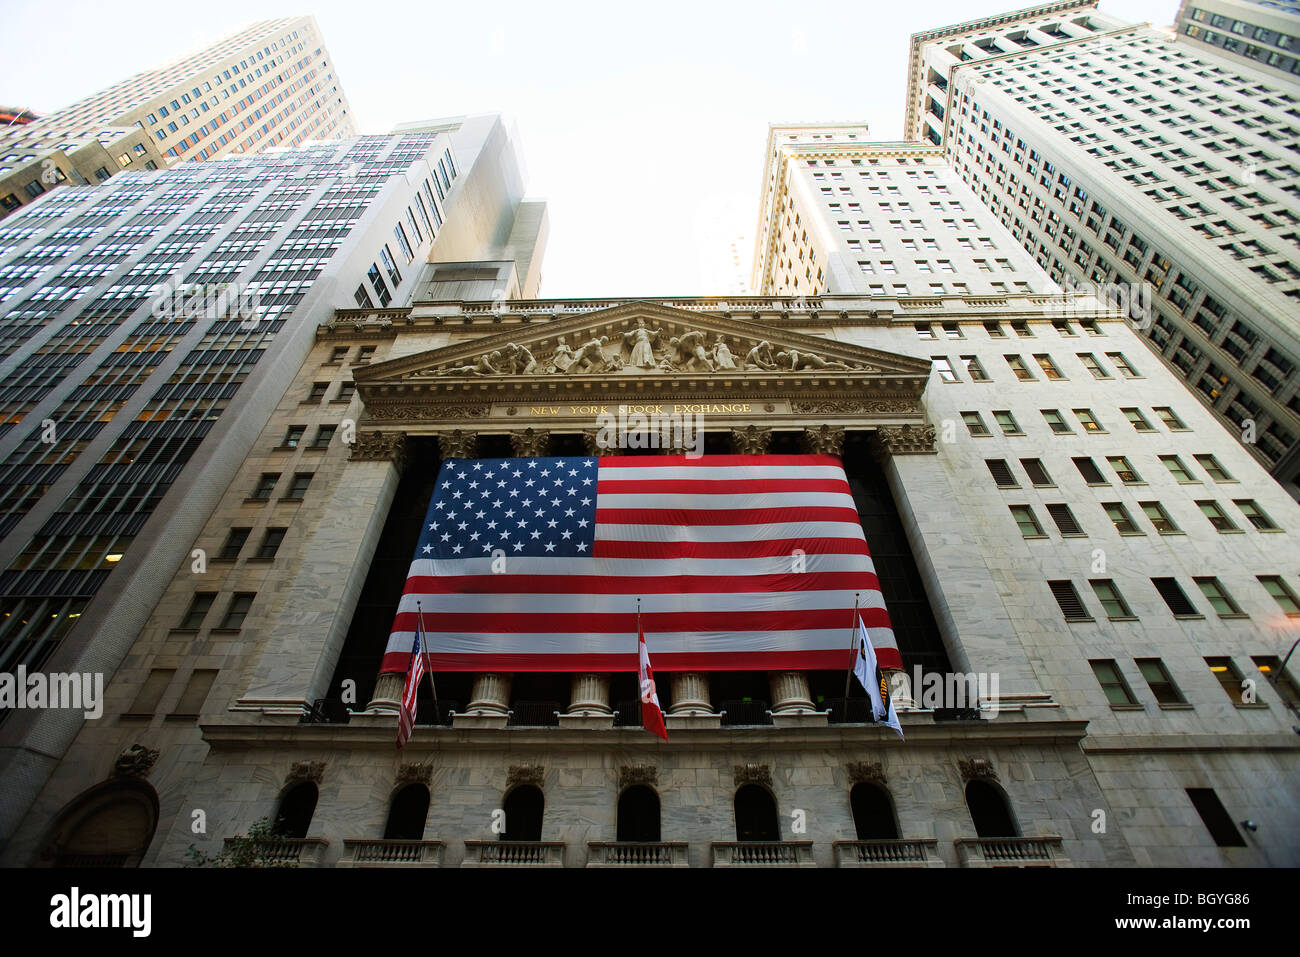 Bourse de New York, New York City, USA Banque D'Images